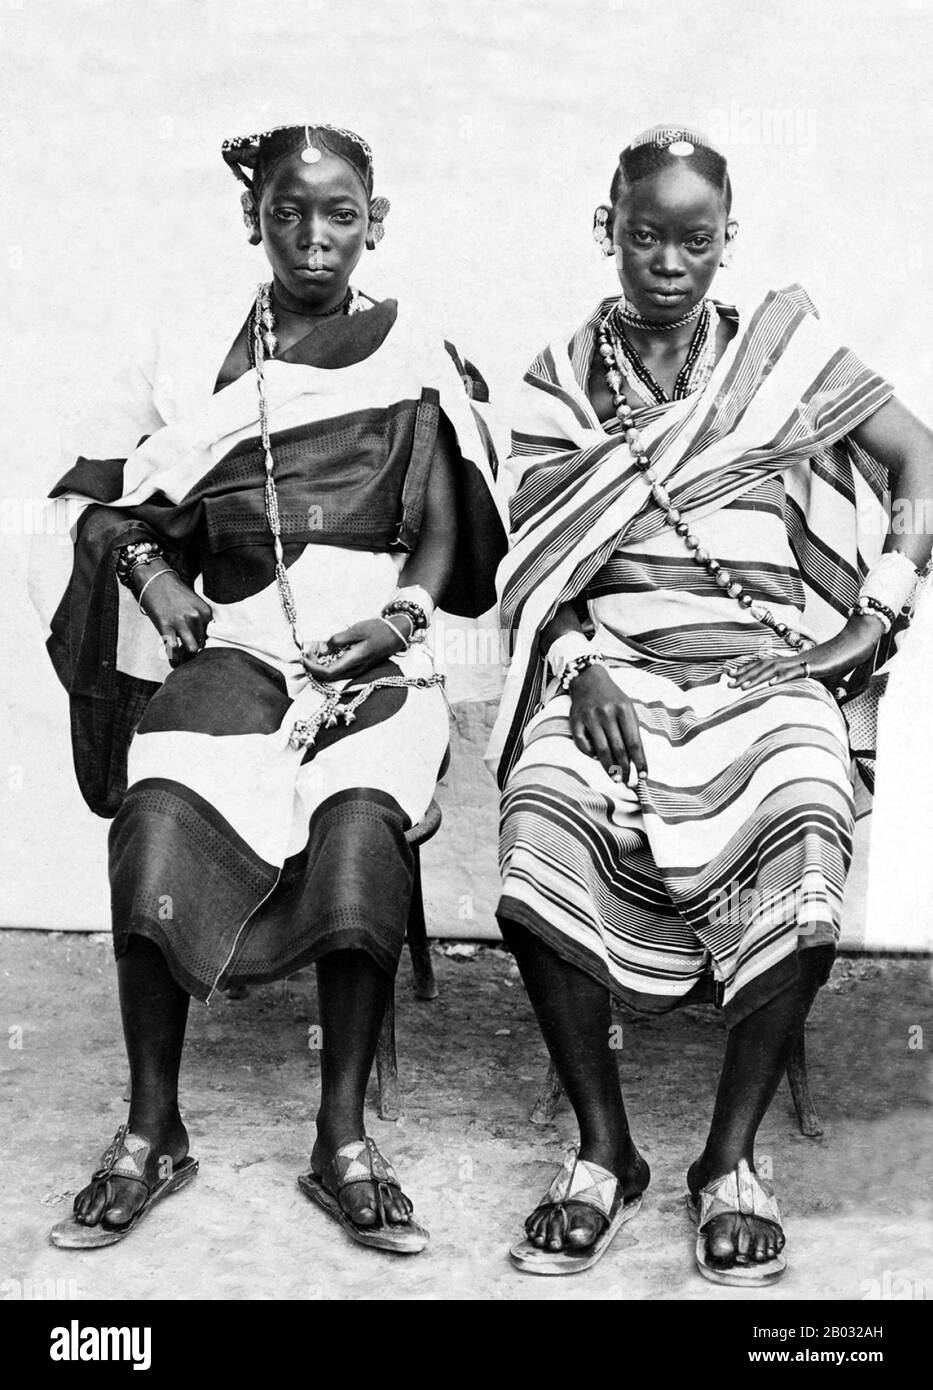 Das Volk der Swahili ist eine ethnische Gruppe und Kultur der Bantu, die in Ostafrika vor allem in den Küstenregionen und den Inseln Kenia, Tansania und Nordmosambik vorkommt. Der Name Swahili leitet sich vom arabischen Wort Sawahil ab, was 'Küstenbewohner' bedeutet, und sie sprechen die Swahili-Sprache. Die Swahili sind ursprüngliche Bantubewohner an der Küste Ostafrikas, in Kenia, Tansania und Mosambik. Sie sind vor allem durch Kultur und unter der Muttersprache von Kiswahili, einer Bantusprache, vereint. Dies gilt auch für arabische, persische und andere Migranten, die die Küste erreicht haben, glauben einige schon im 7 Stockfoto